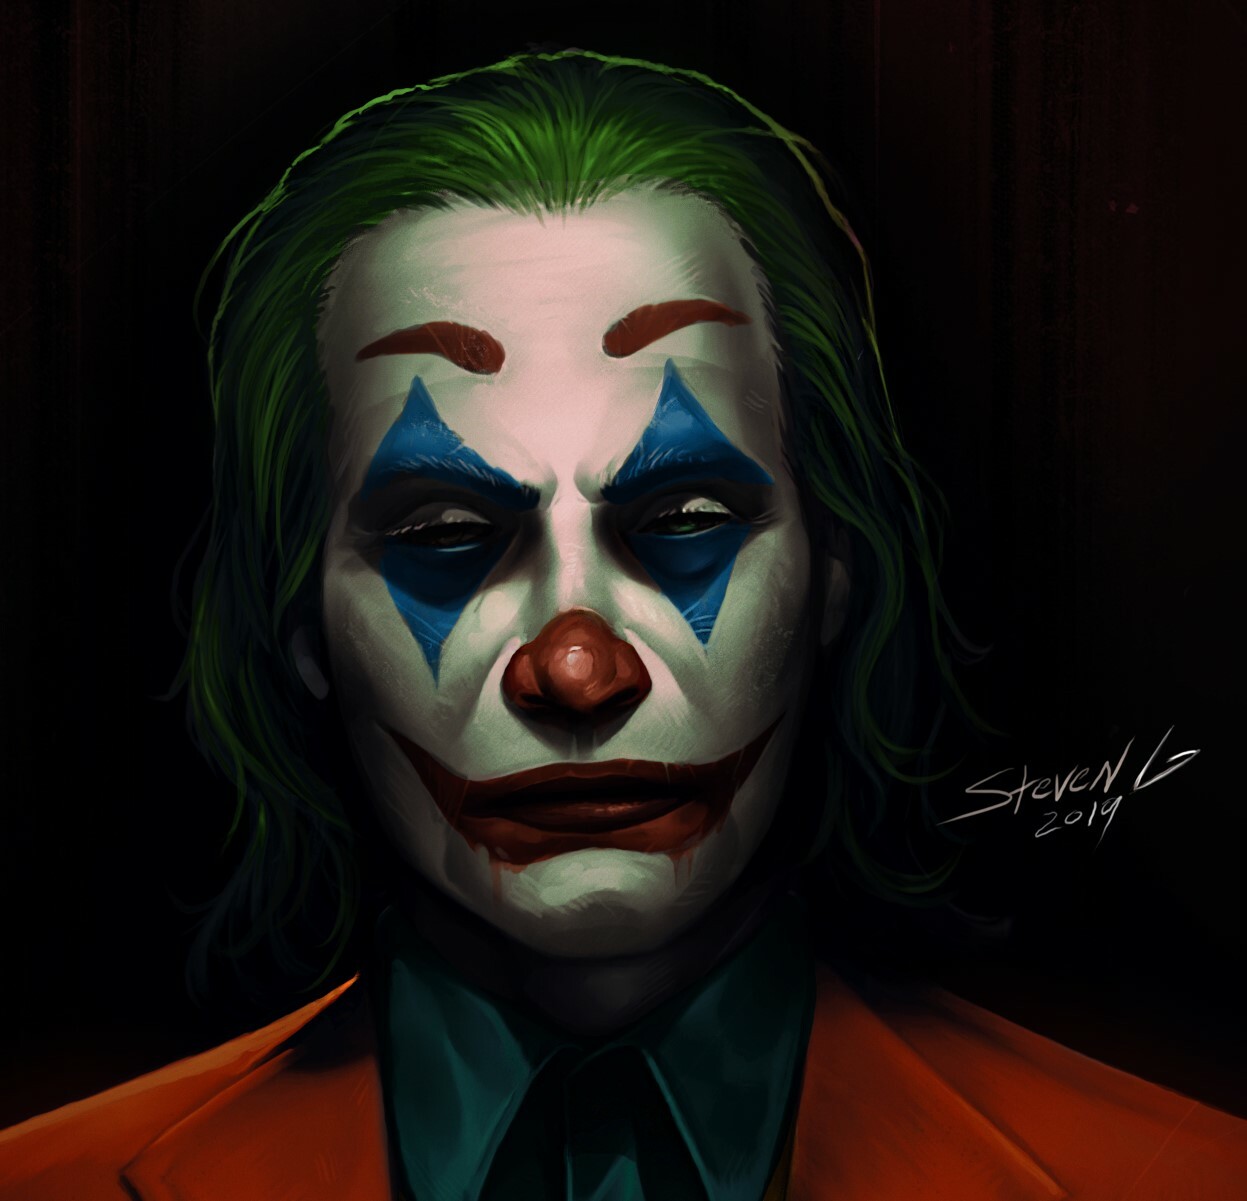 Steven G - The Joker 2019